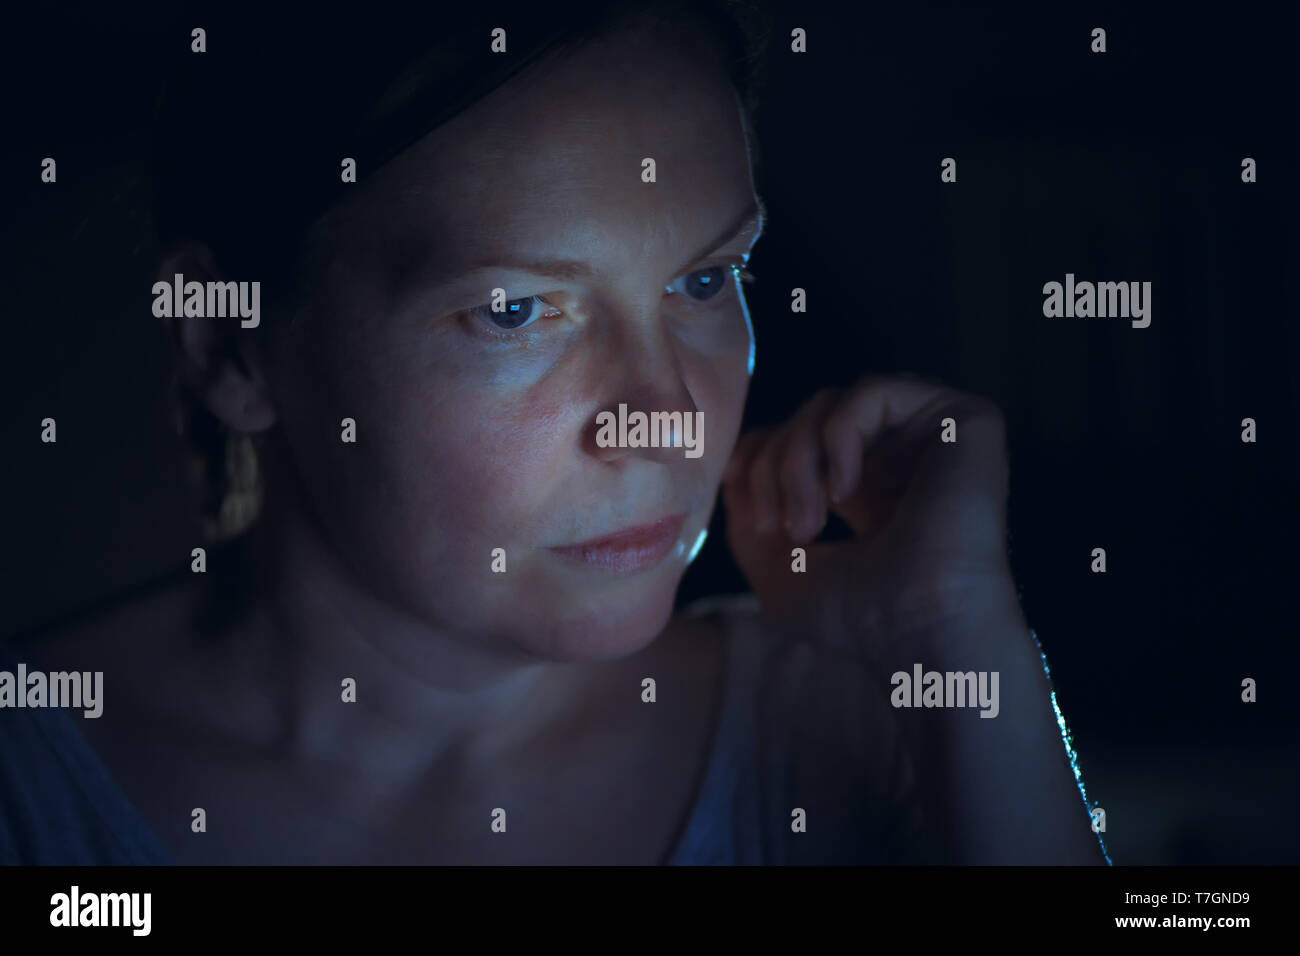 Touche Bas Portrait of tired woman looking at laptop computer écran exposé à l'effet de la technologie lumière bleue qui a des répercussions sur le Sommeil et rythmes circadiens r Banque D'Images